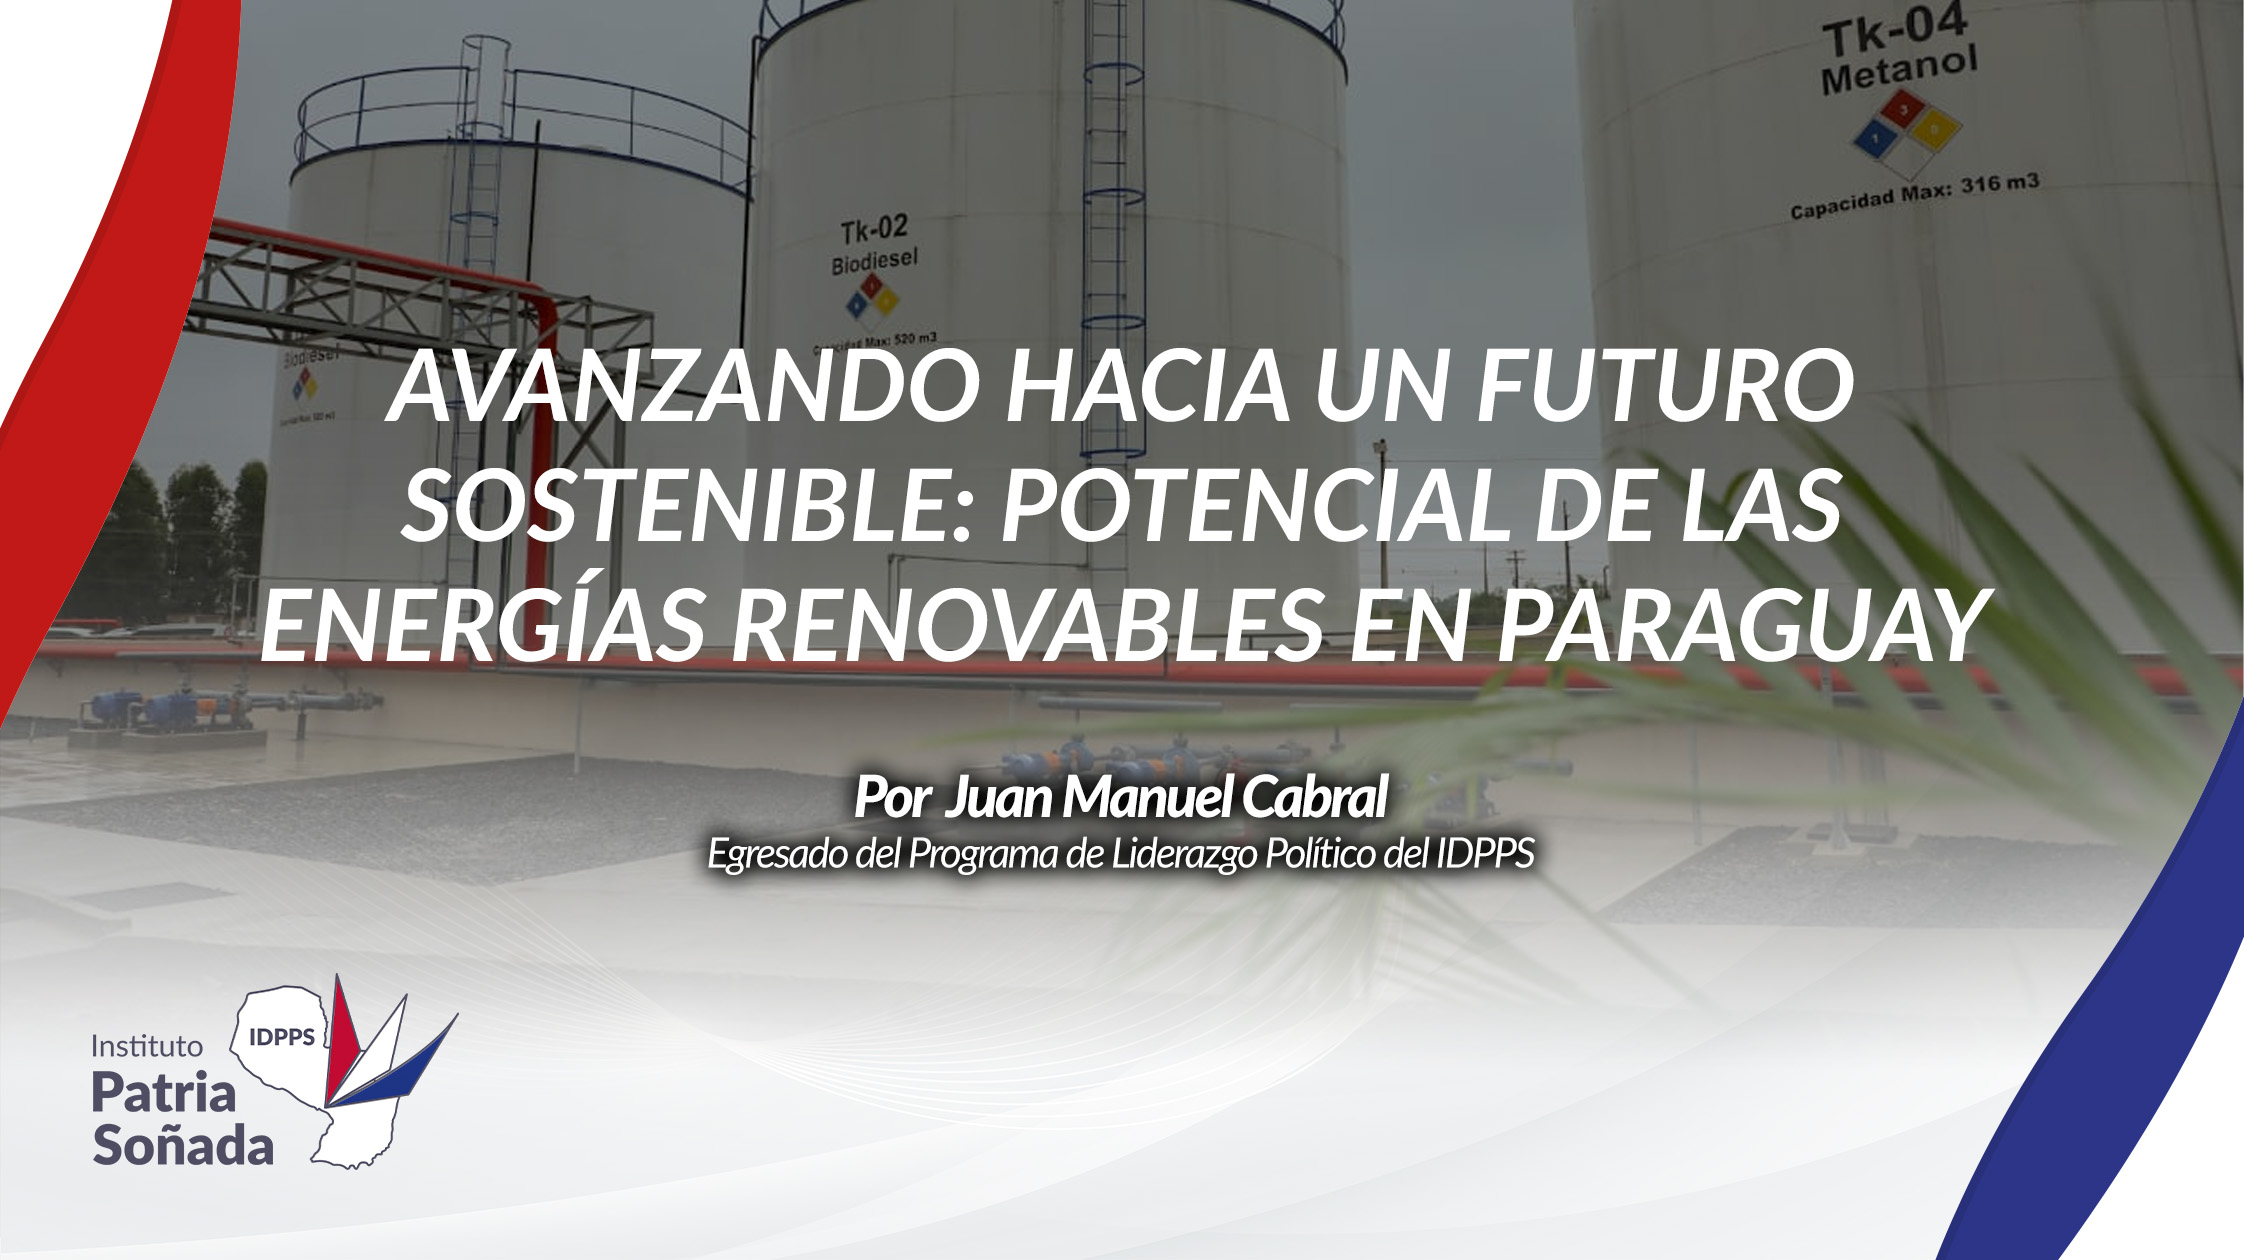 "Avanzando hacia un Futuro Sostenible: Potencial de las Energías Renovables en Paraguay"